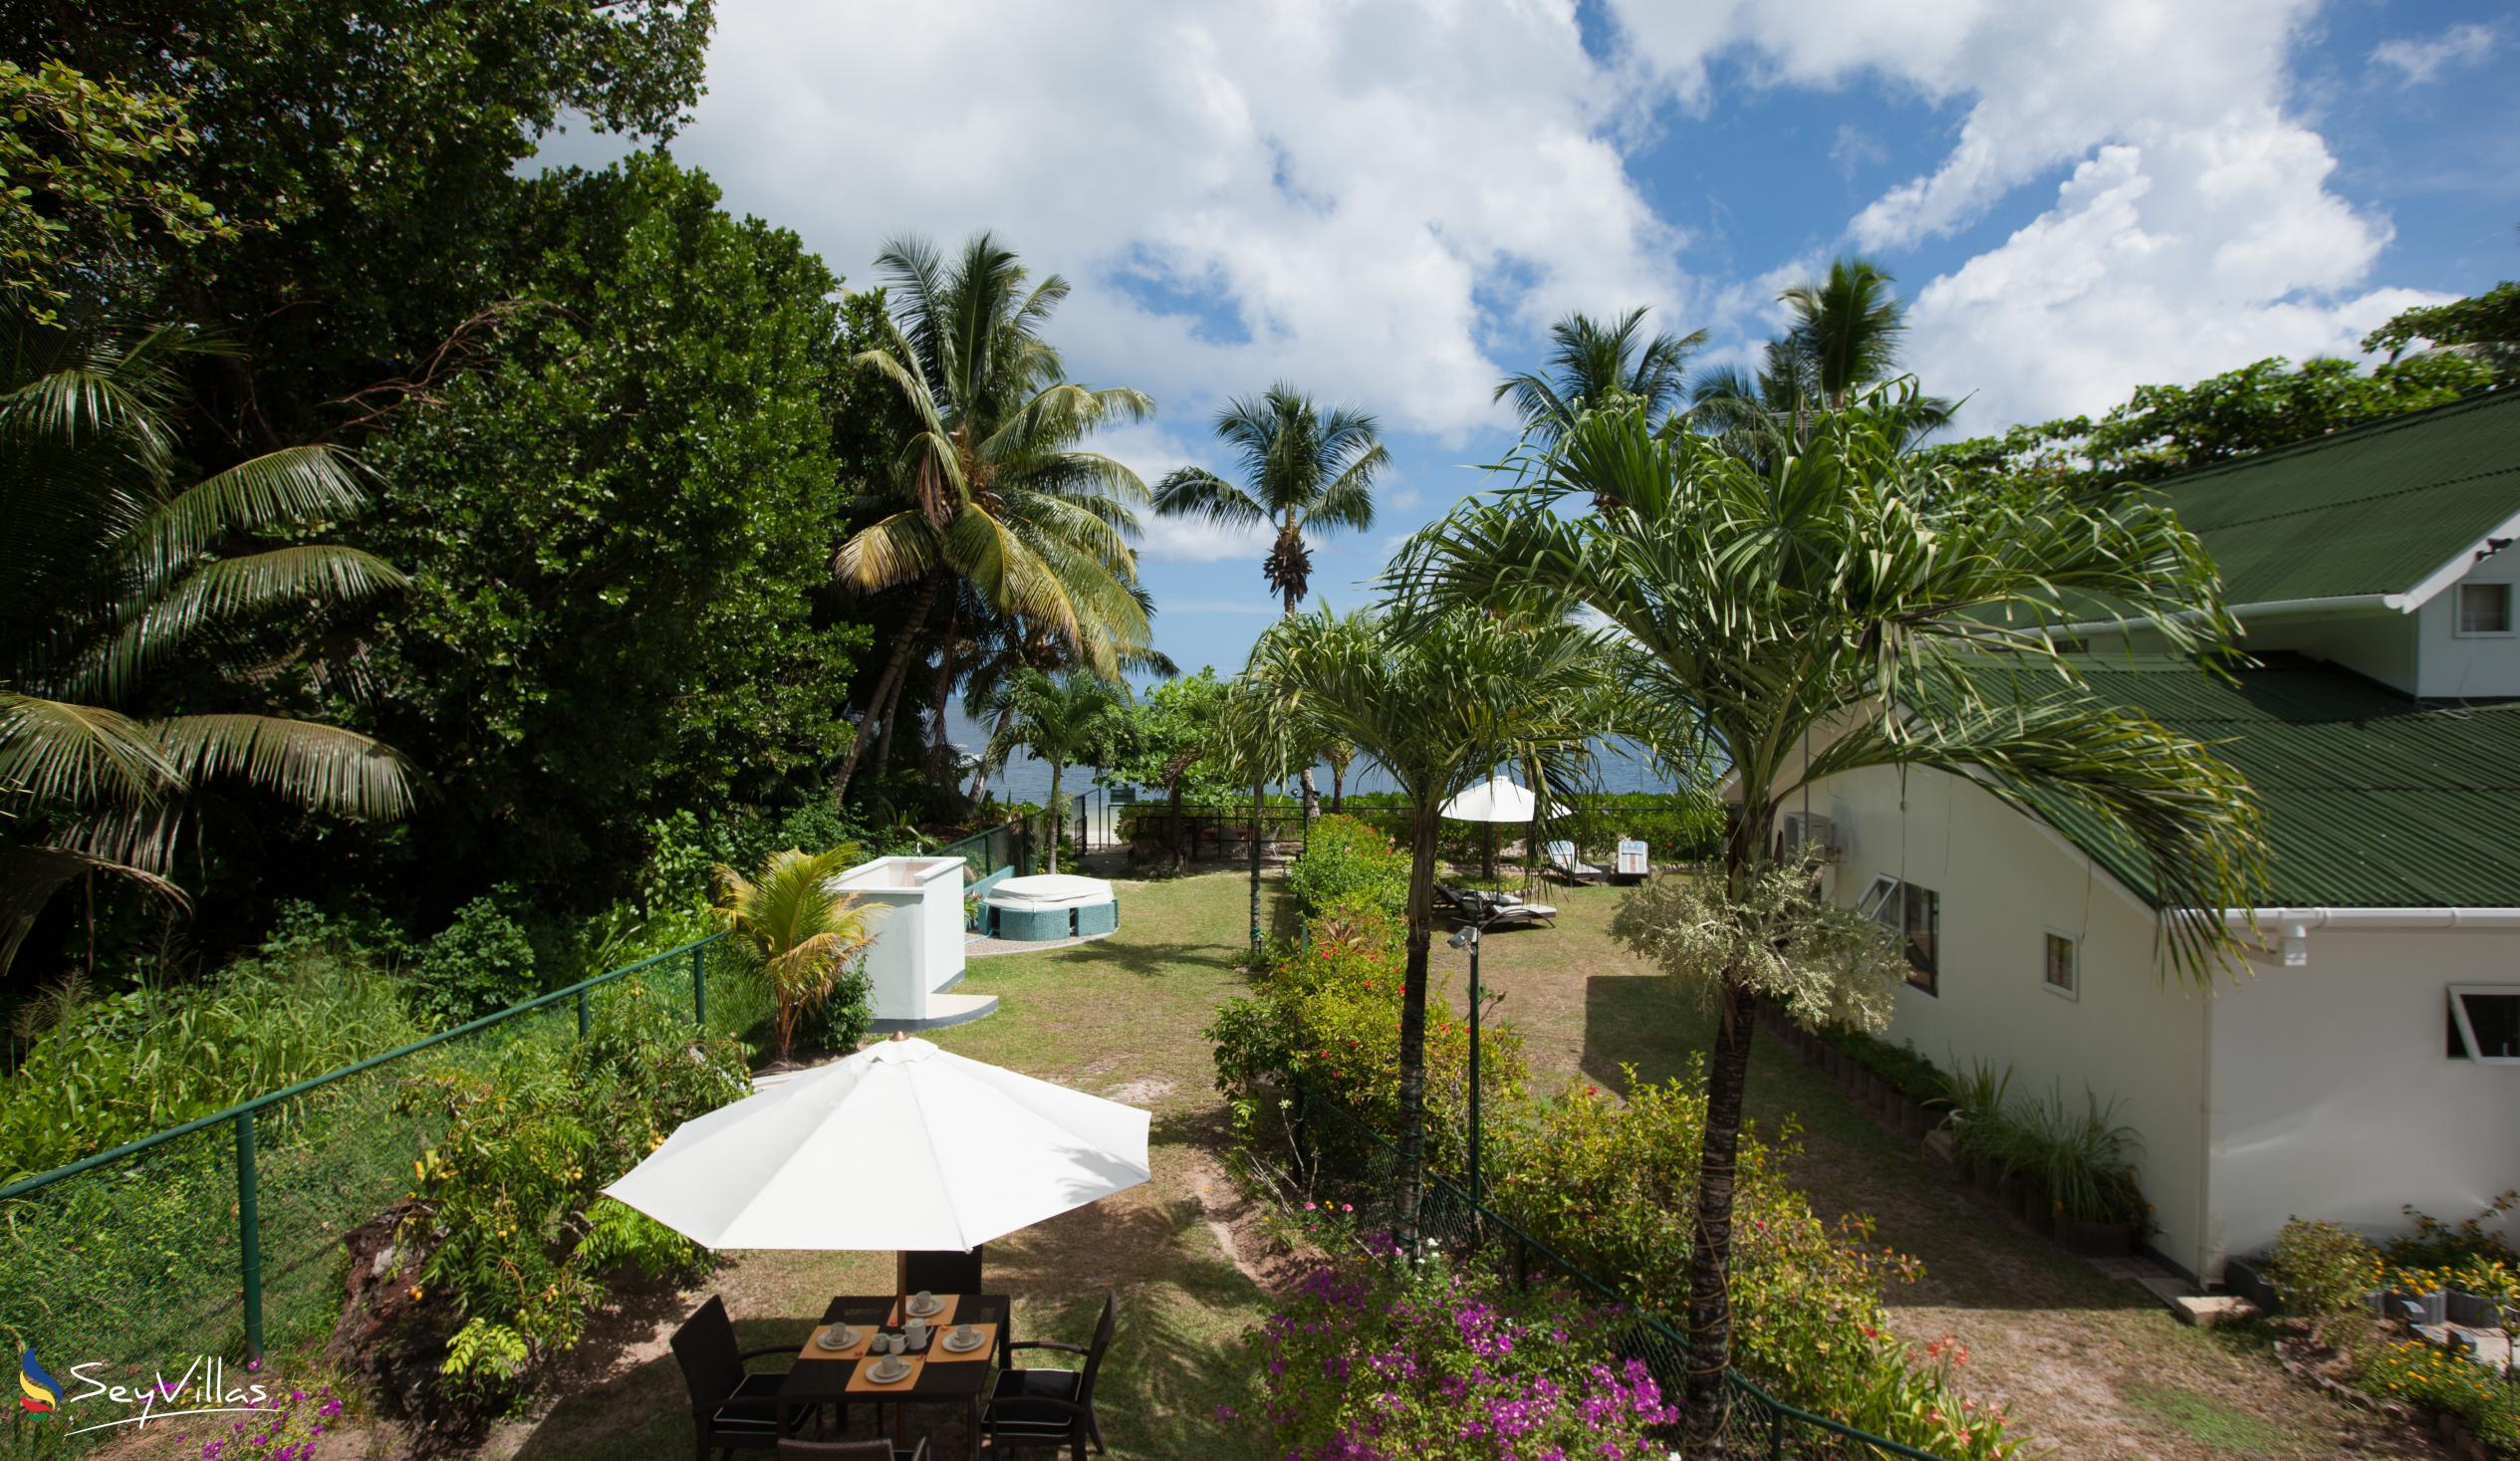 Foto 13: Ocean Villa - Aussenbereich - Praslin (Seychellen)